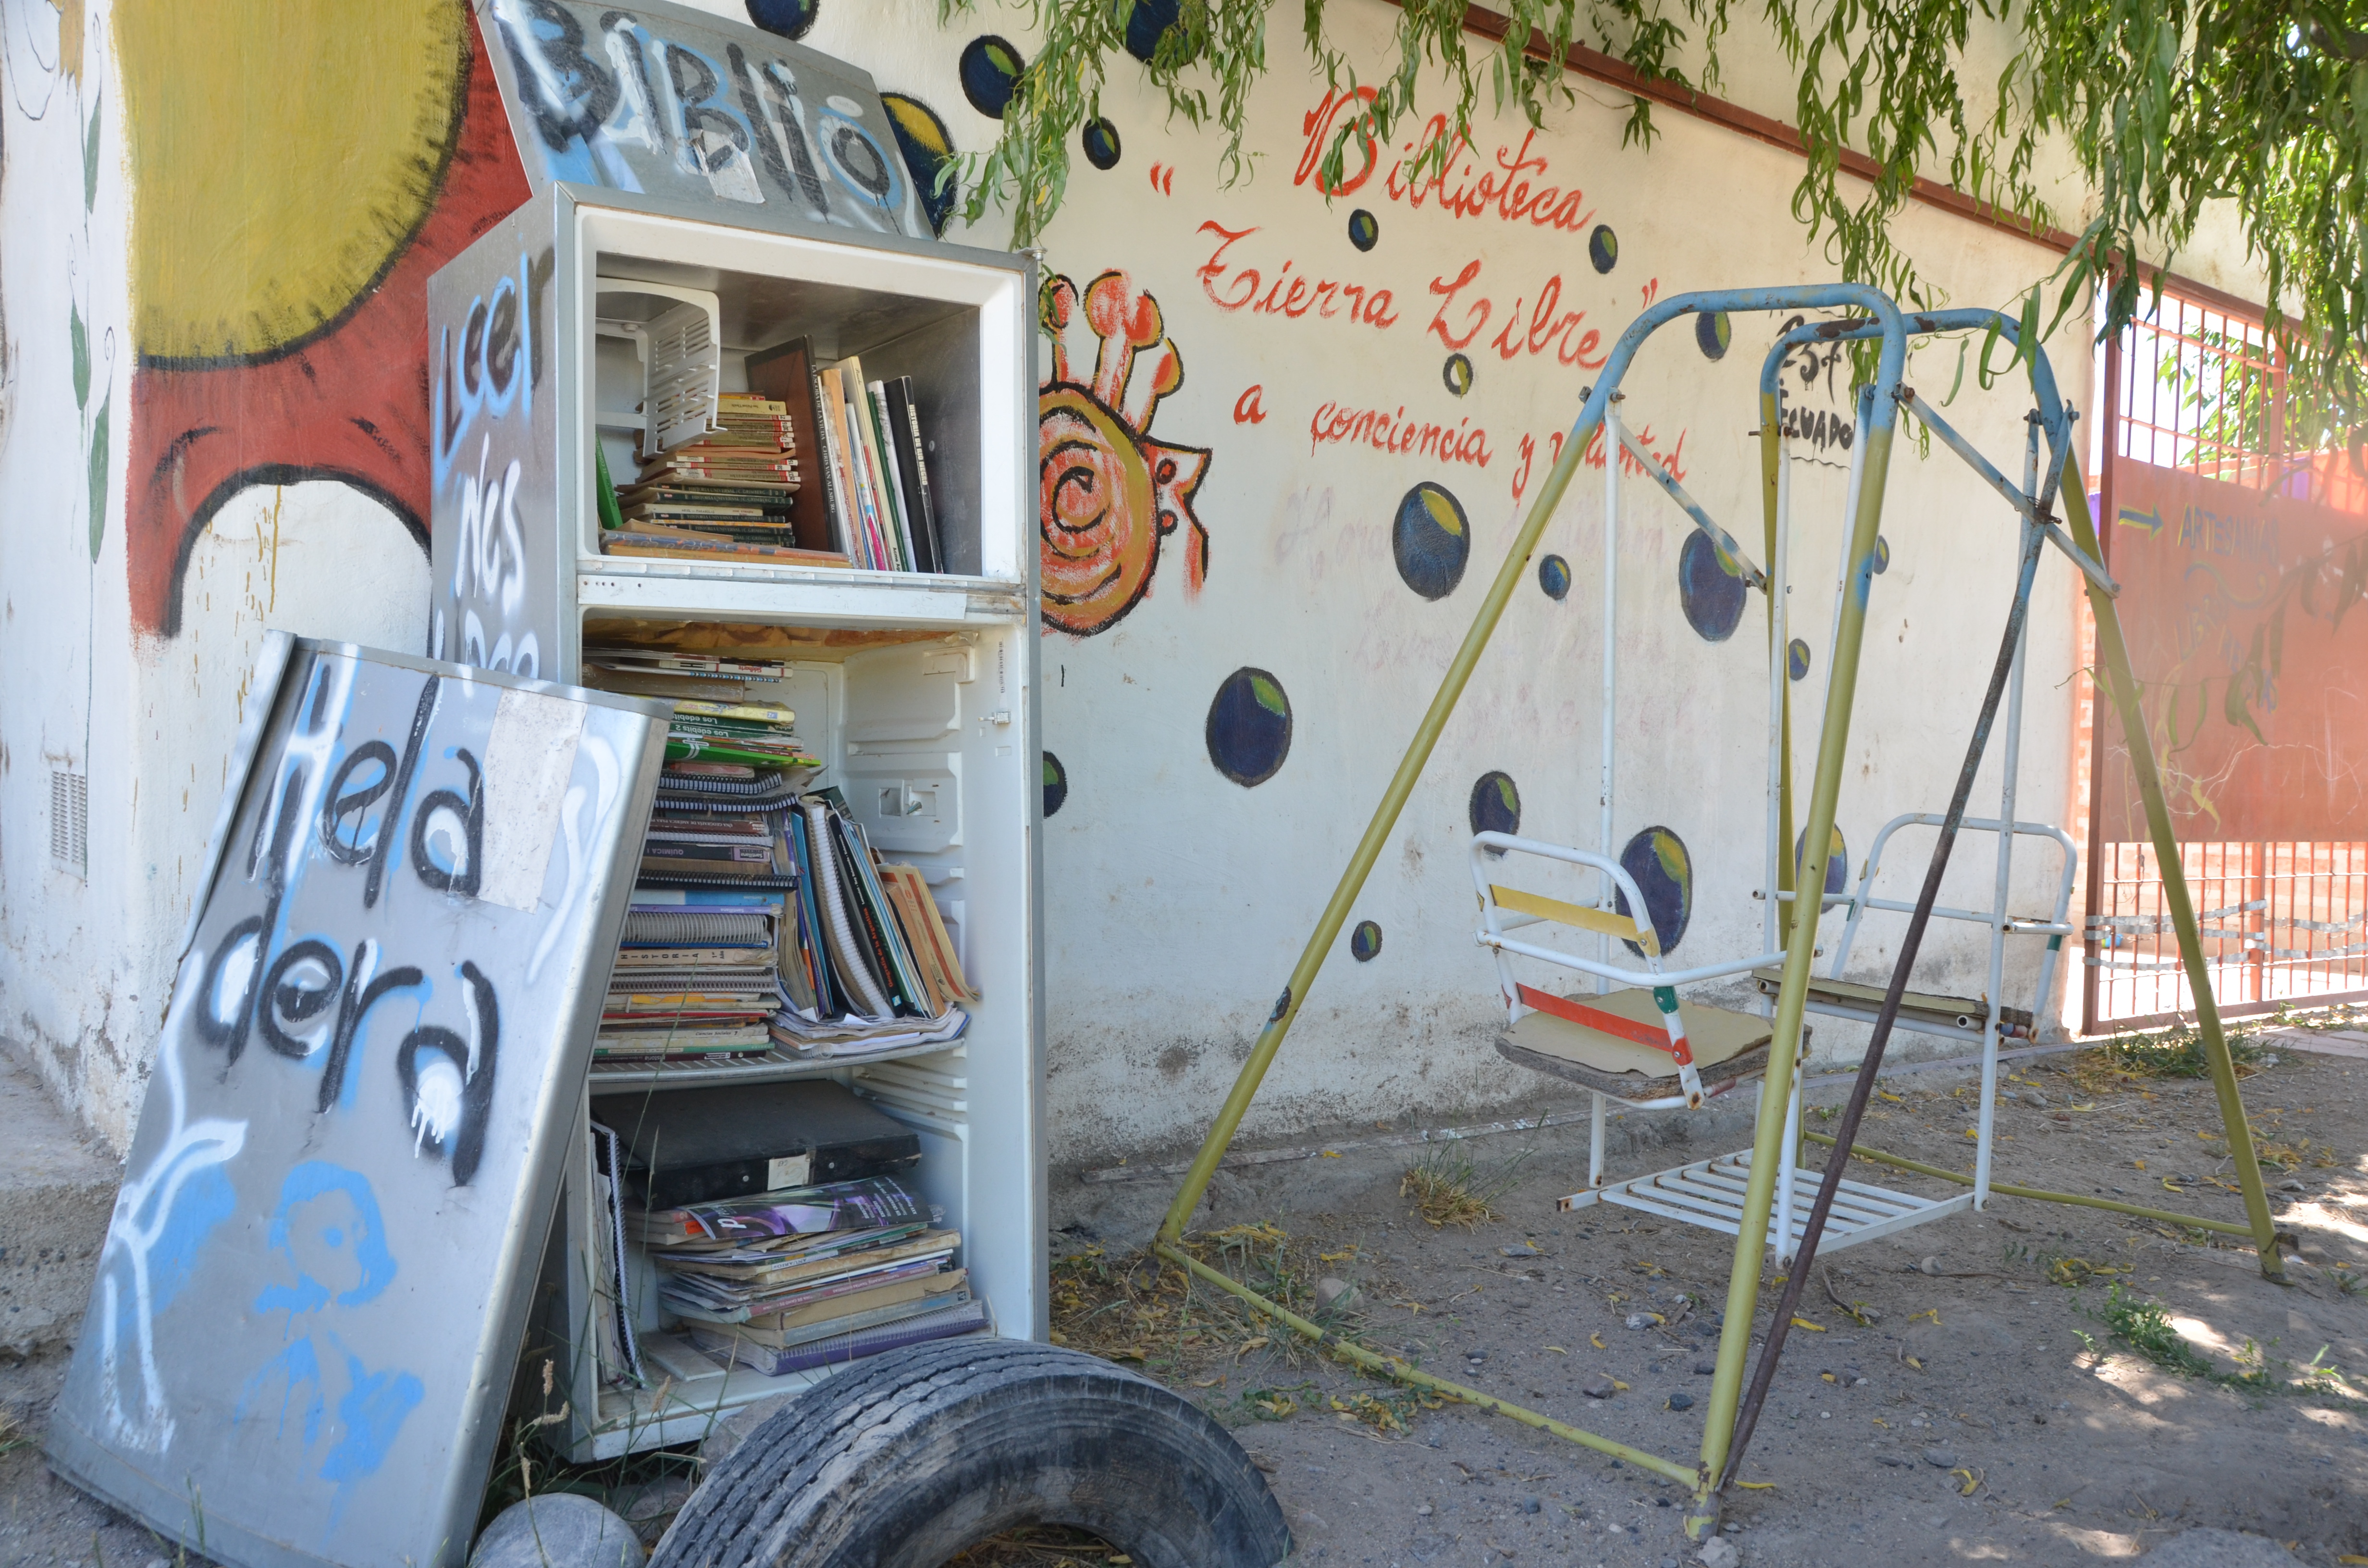 La biblioheladera, en la vía pública, está ubicada en barrio Los Olivos, de Roca. Foto: Gino Avoledo